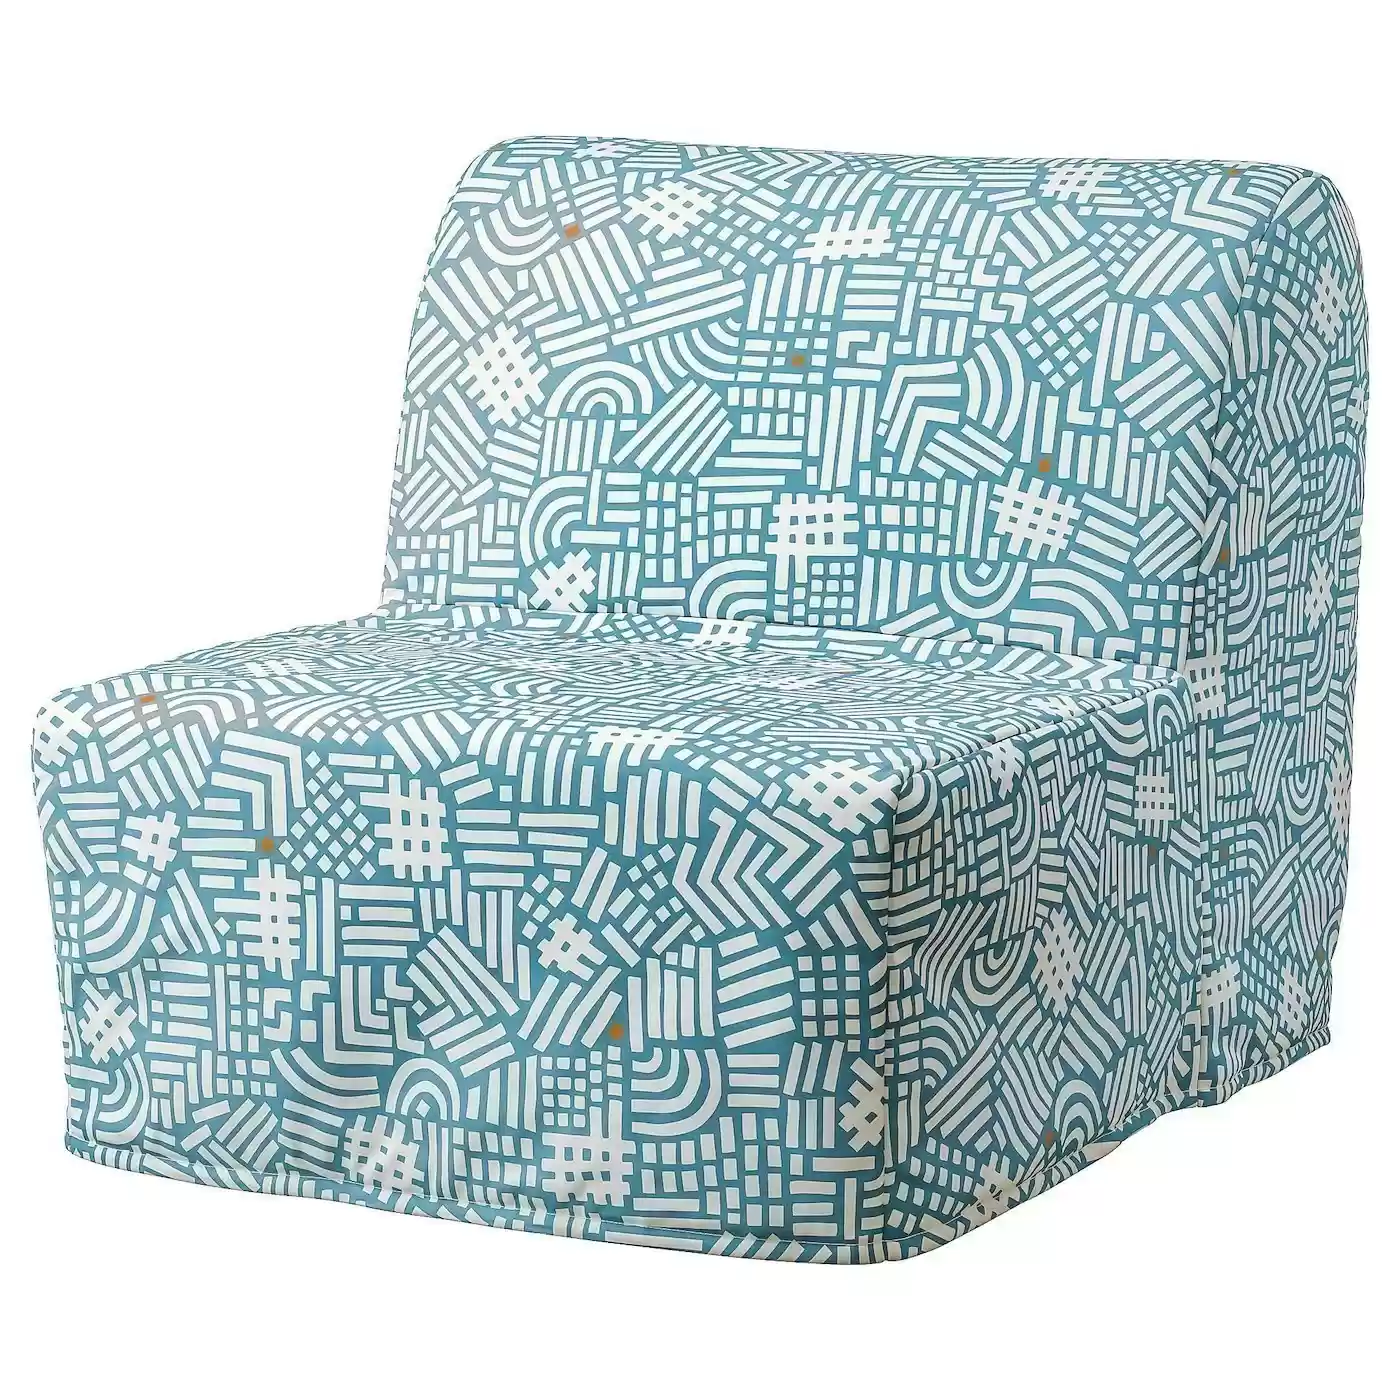 Кресло-кровать Ликселе Мурбо ИКЕА (IKEA)